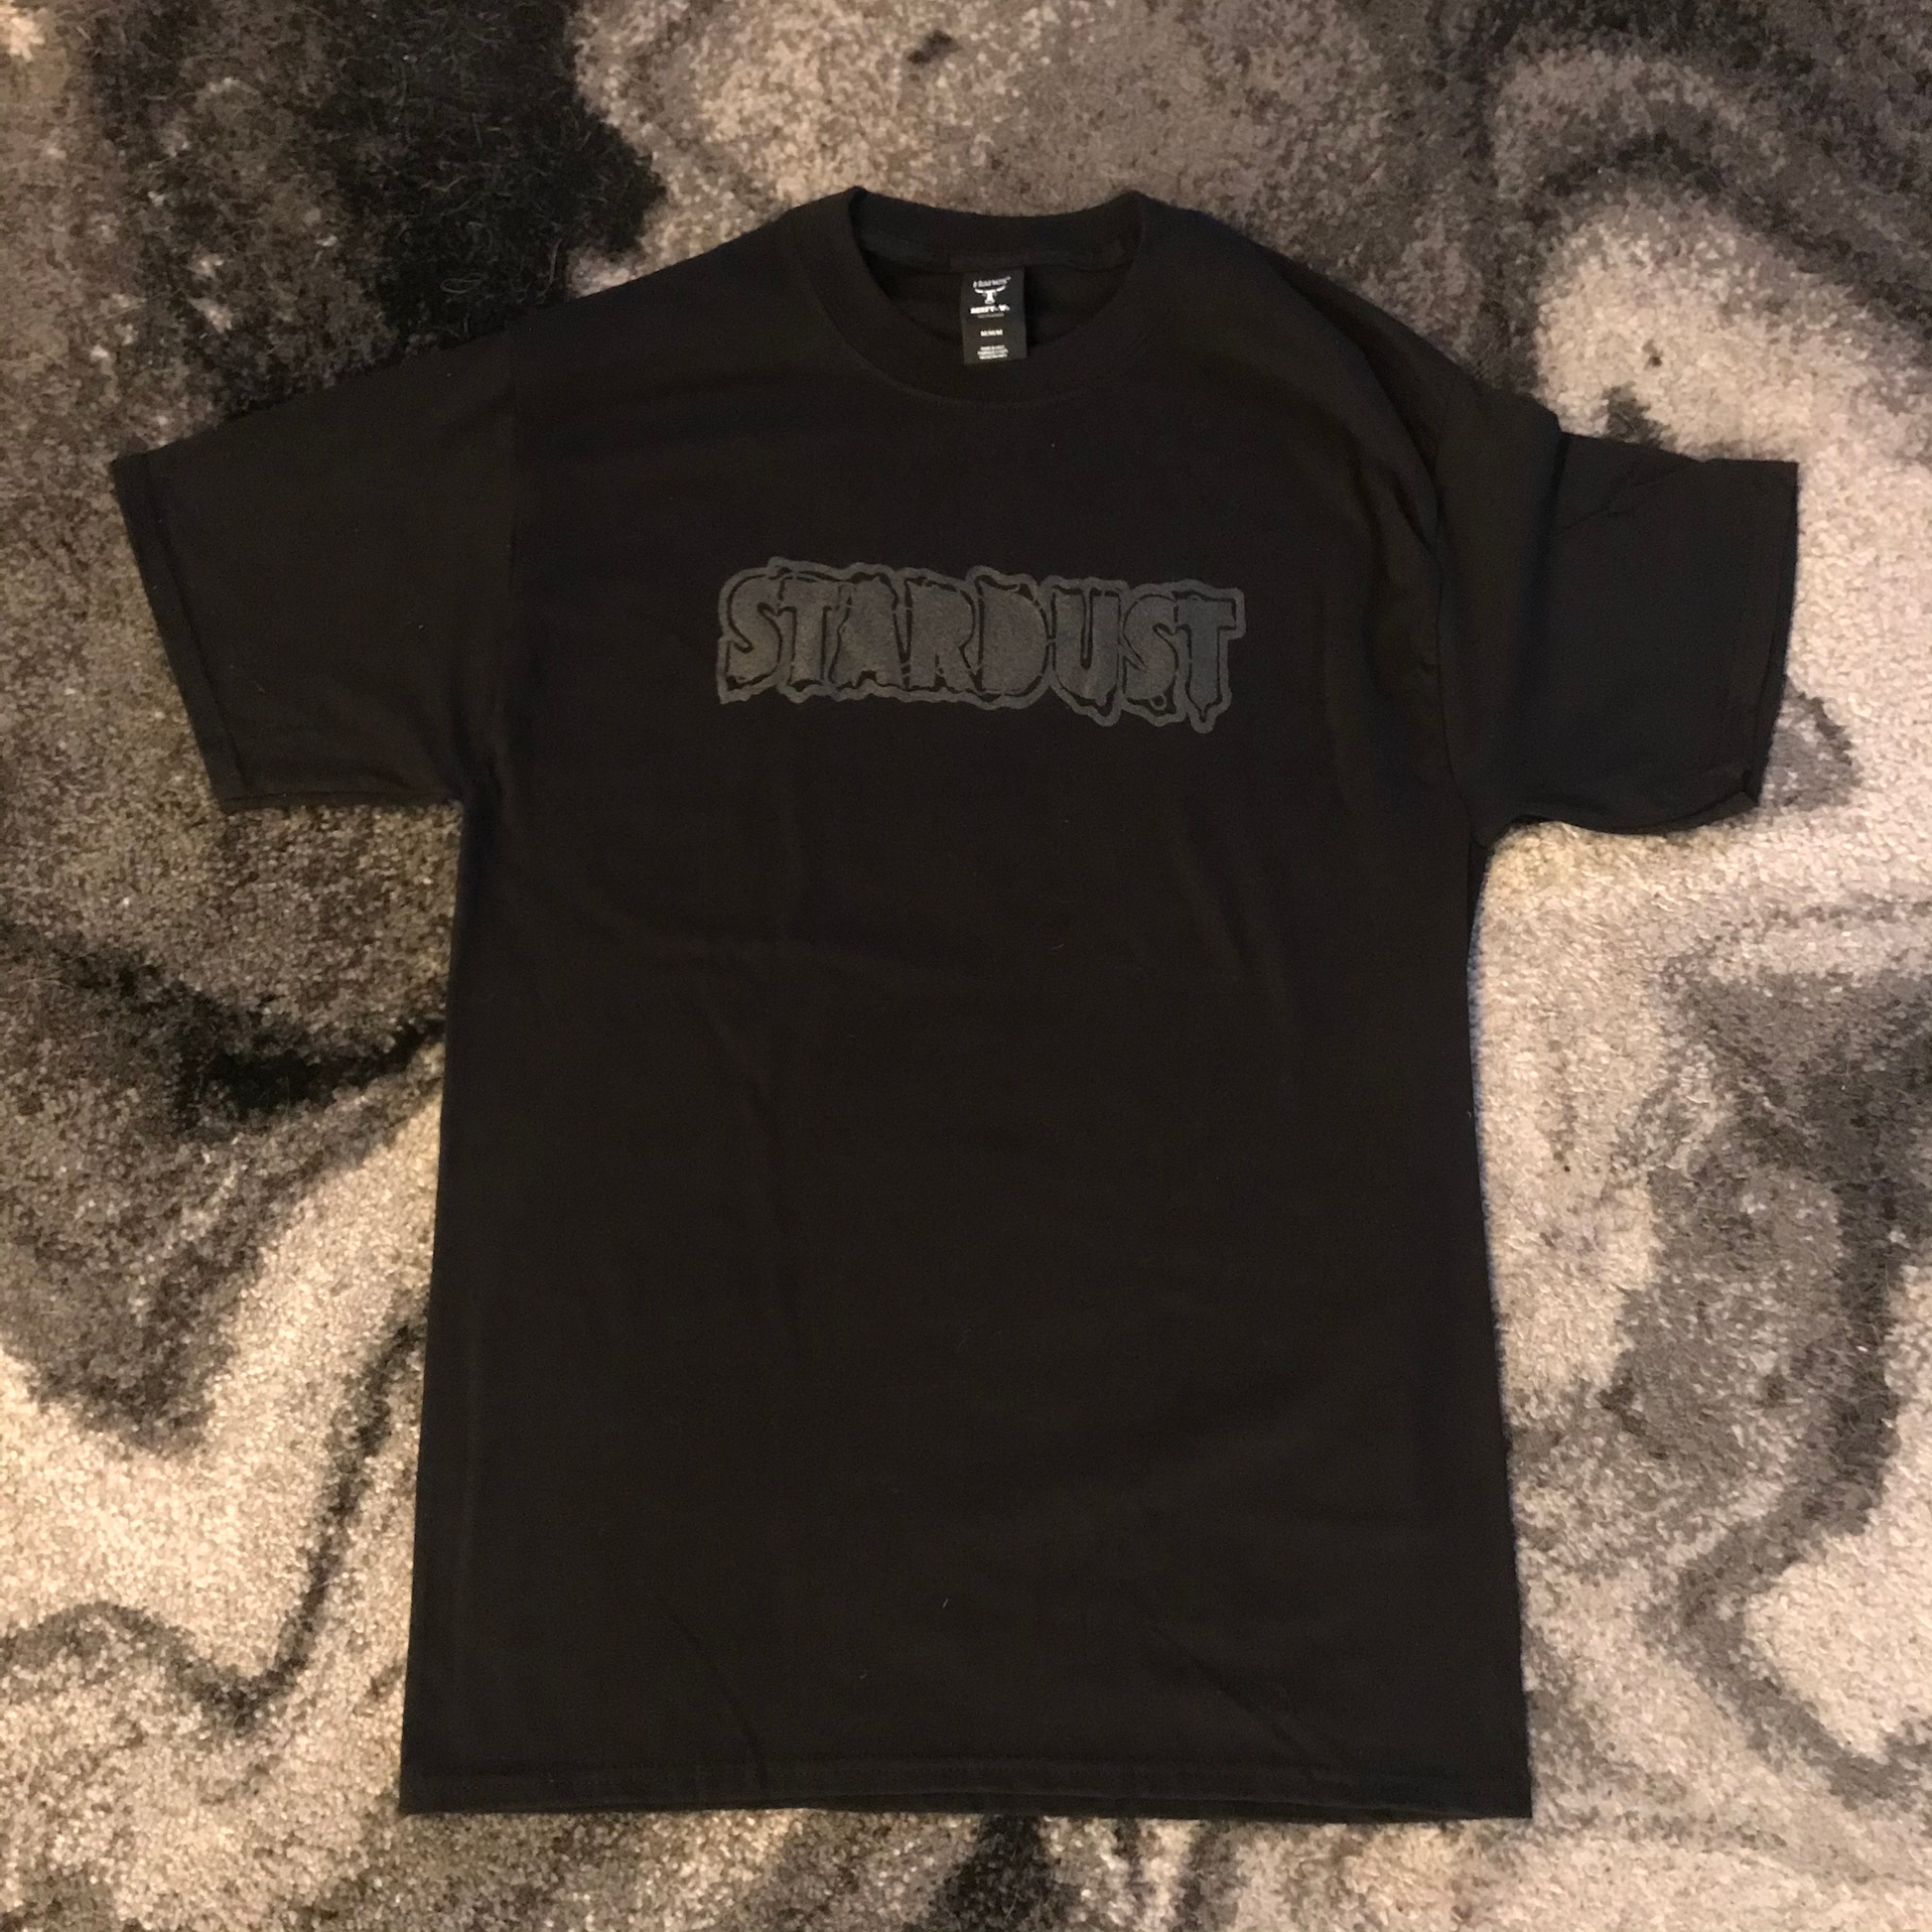 Stardust Skate Shop Gaspar Tee 001 Black / Black